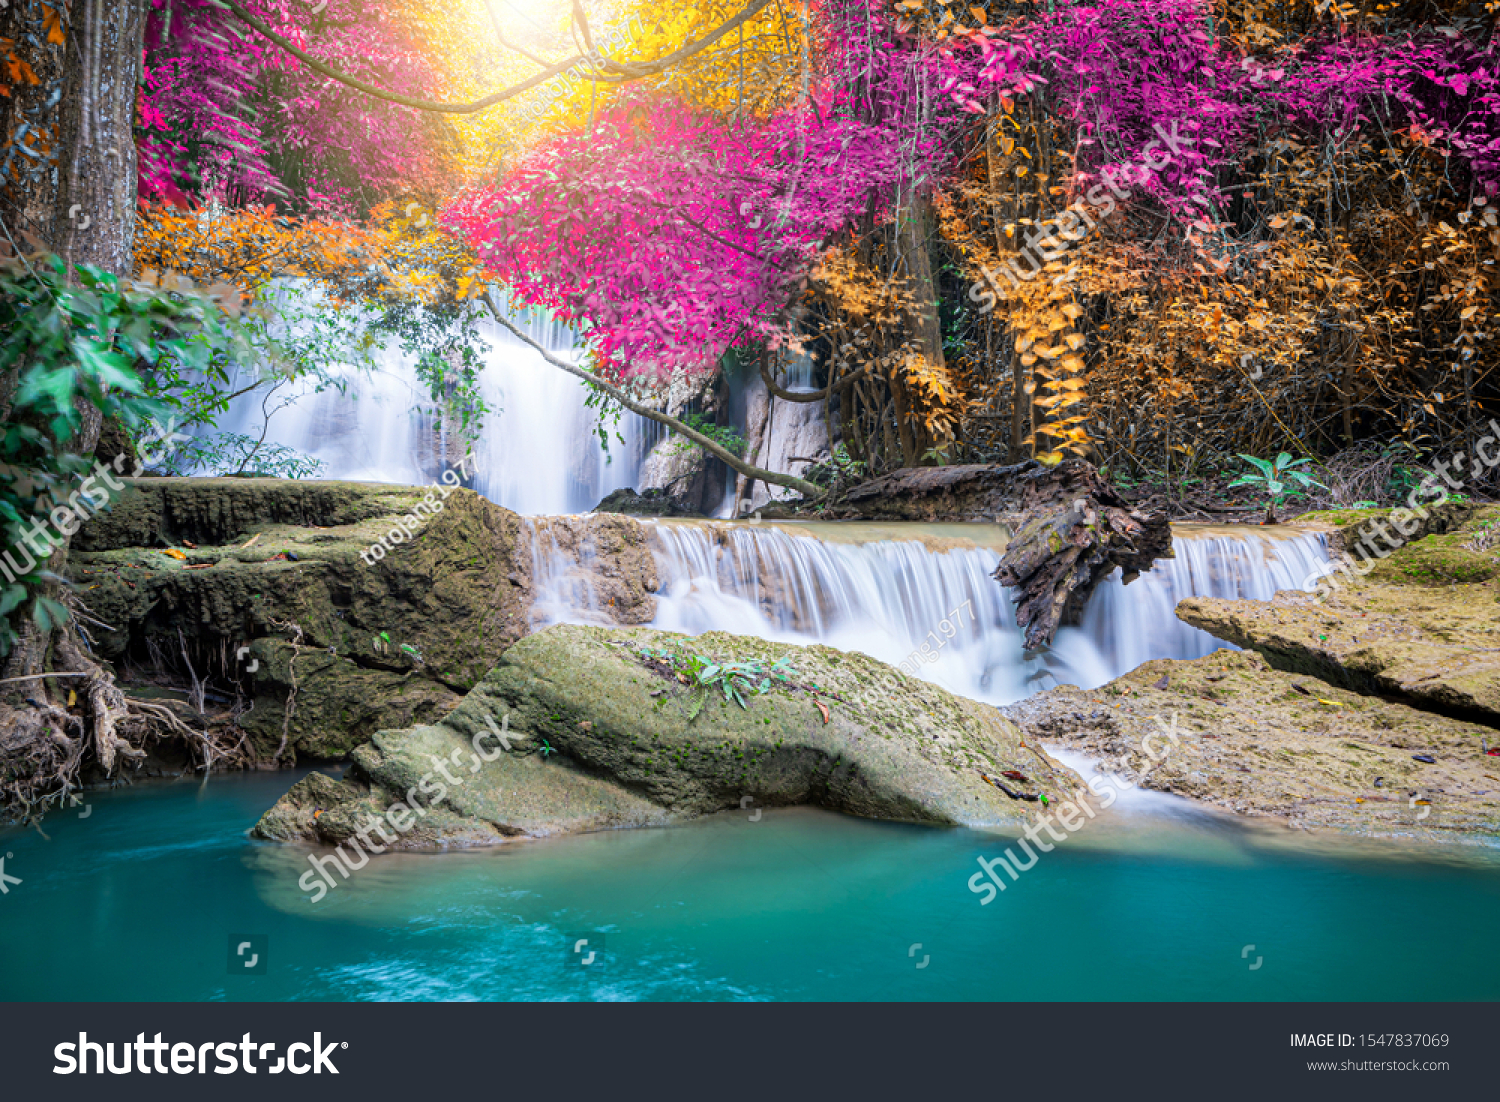 Parametre Sindsro Sightseeing Amazing Nature Beautiful Waterfall Colorful Autumn Stock Photo (Edit Now)  1547837069